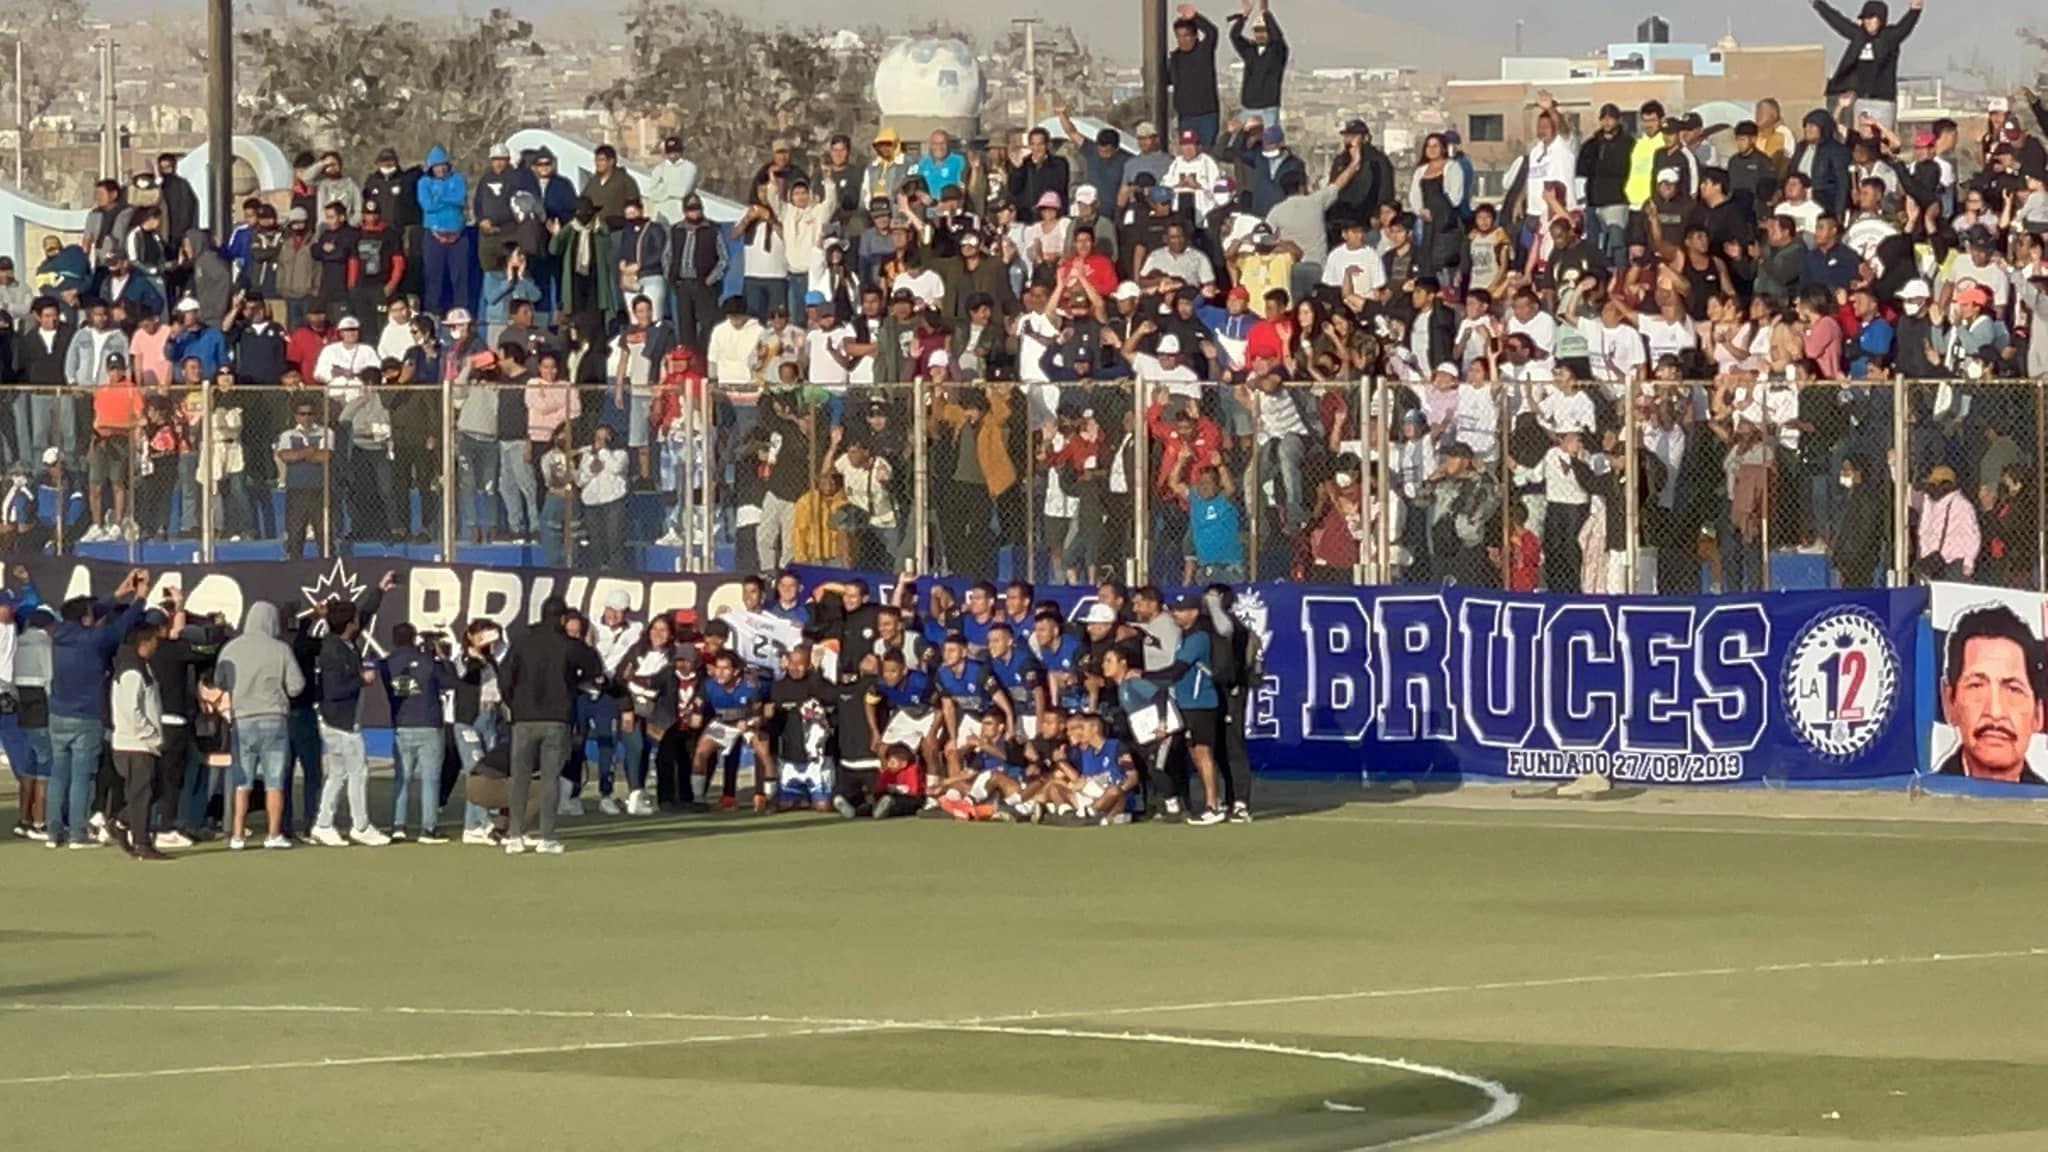 Atlético Bruces es uno de los aspirantes a ganar la Copa Perú. Foto: Facebook Club Atlético Bruces